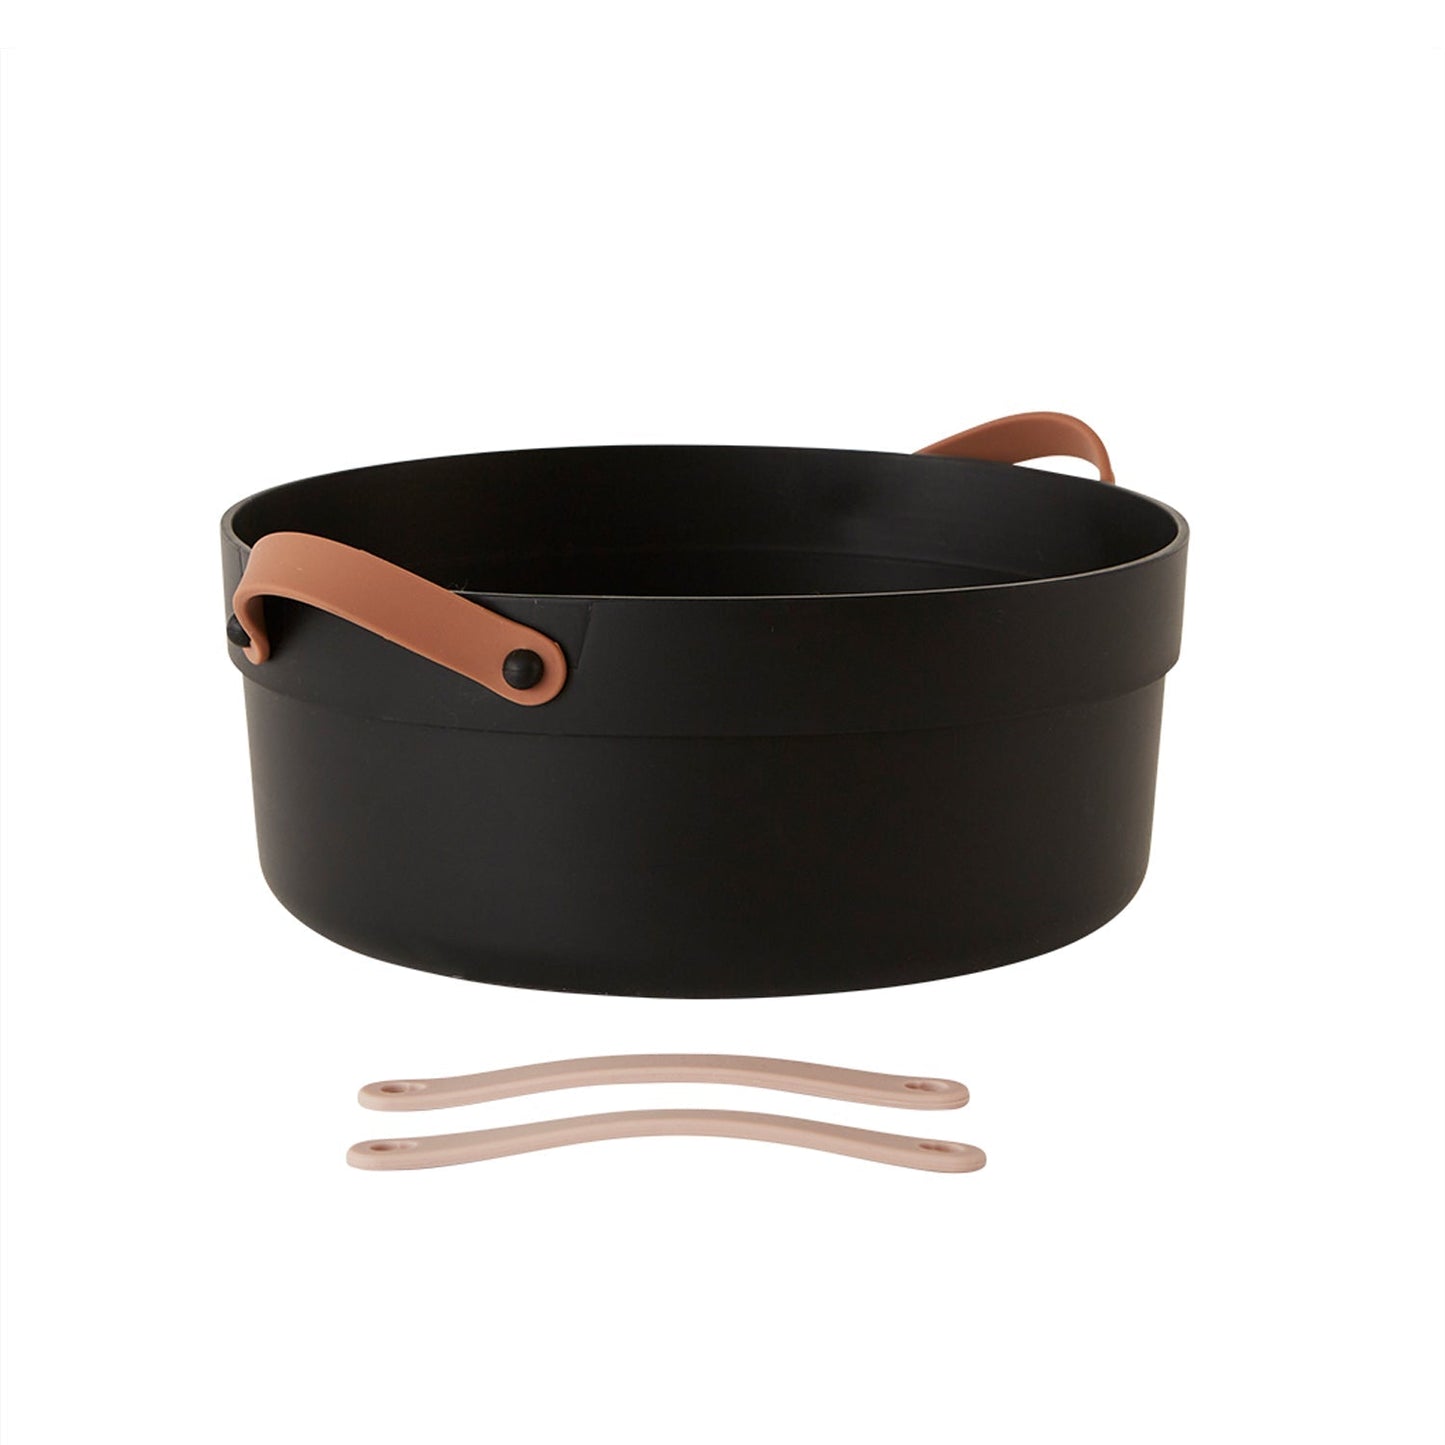 Mio Wash Tub - Black Kitchen accessories OYOY 